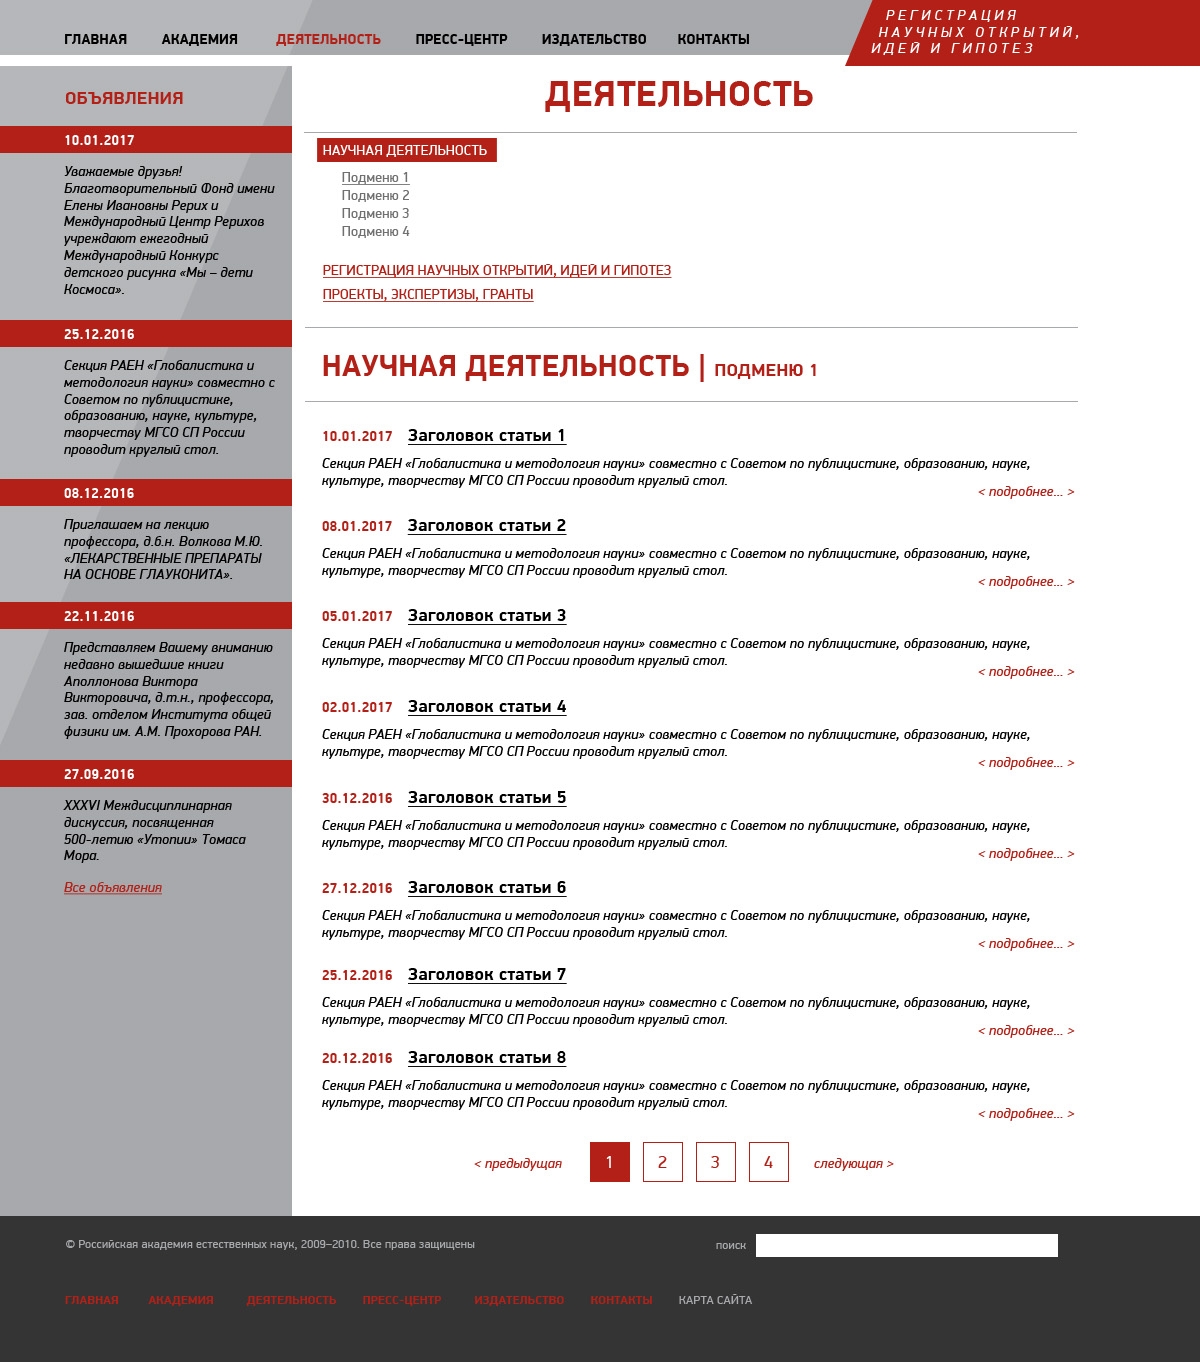 Макет страницы научной деятельности сайта Российской академии естественных наук